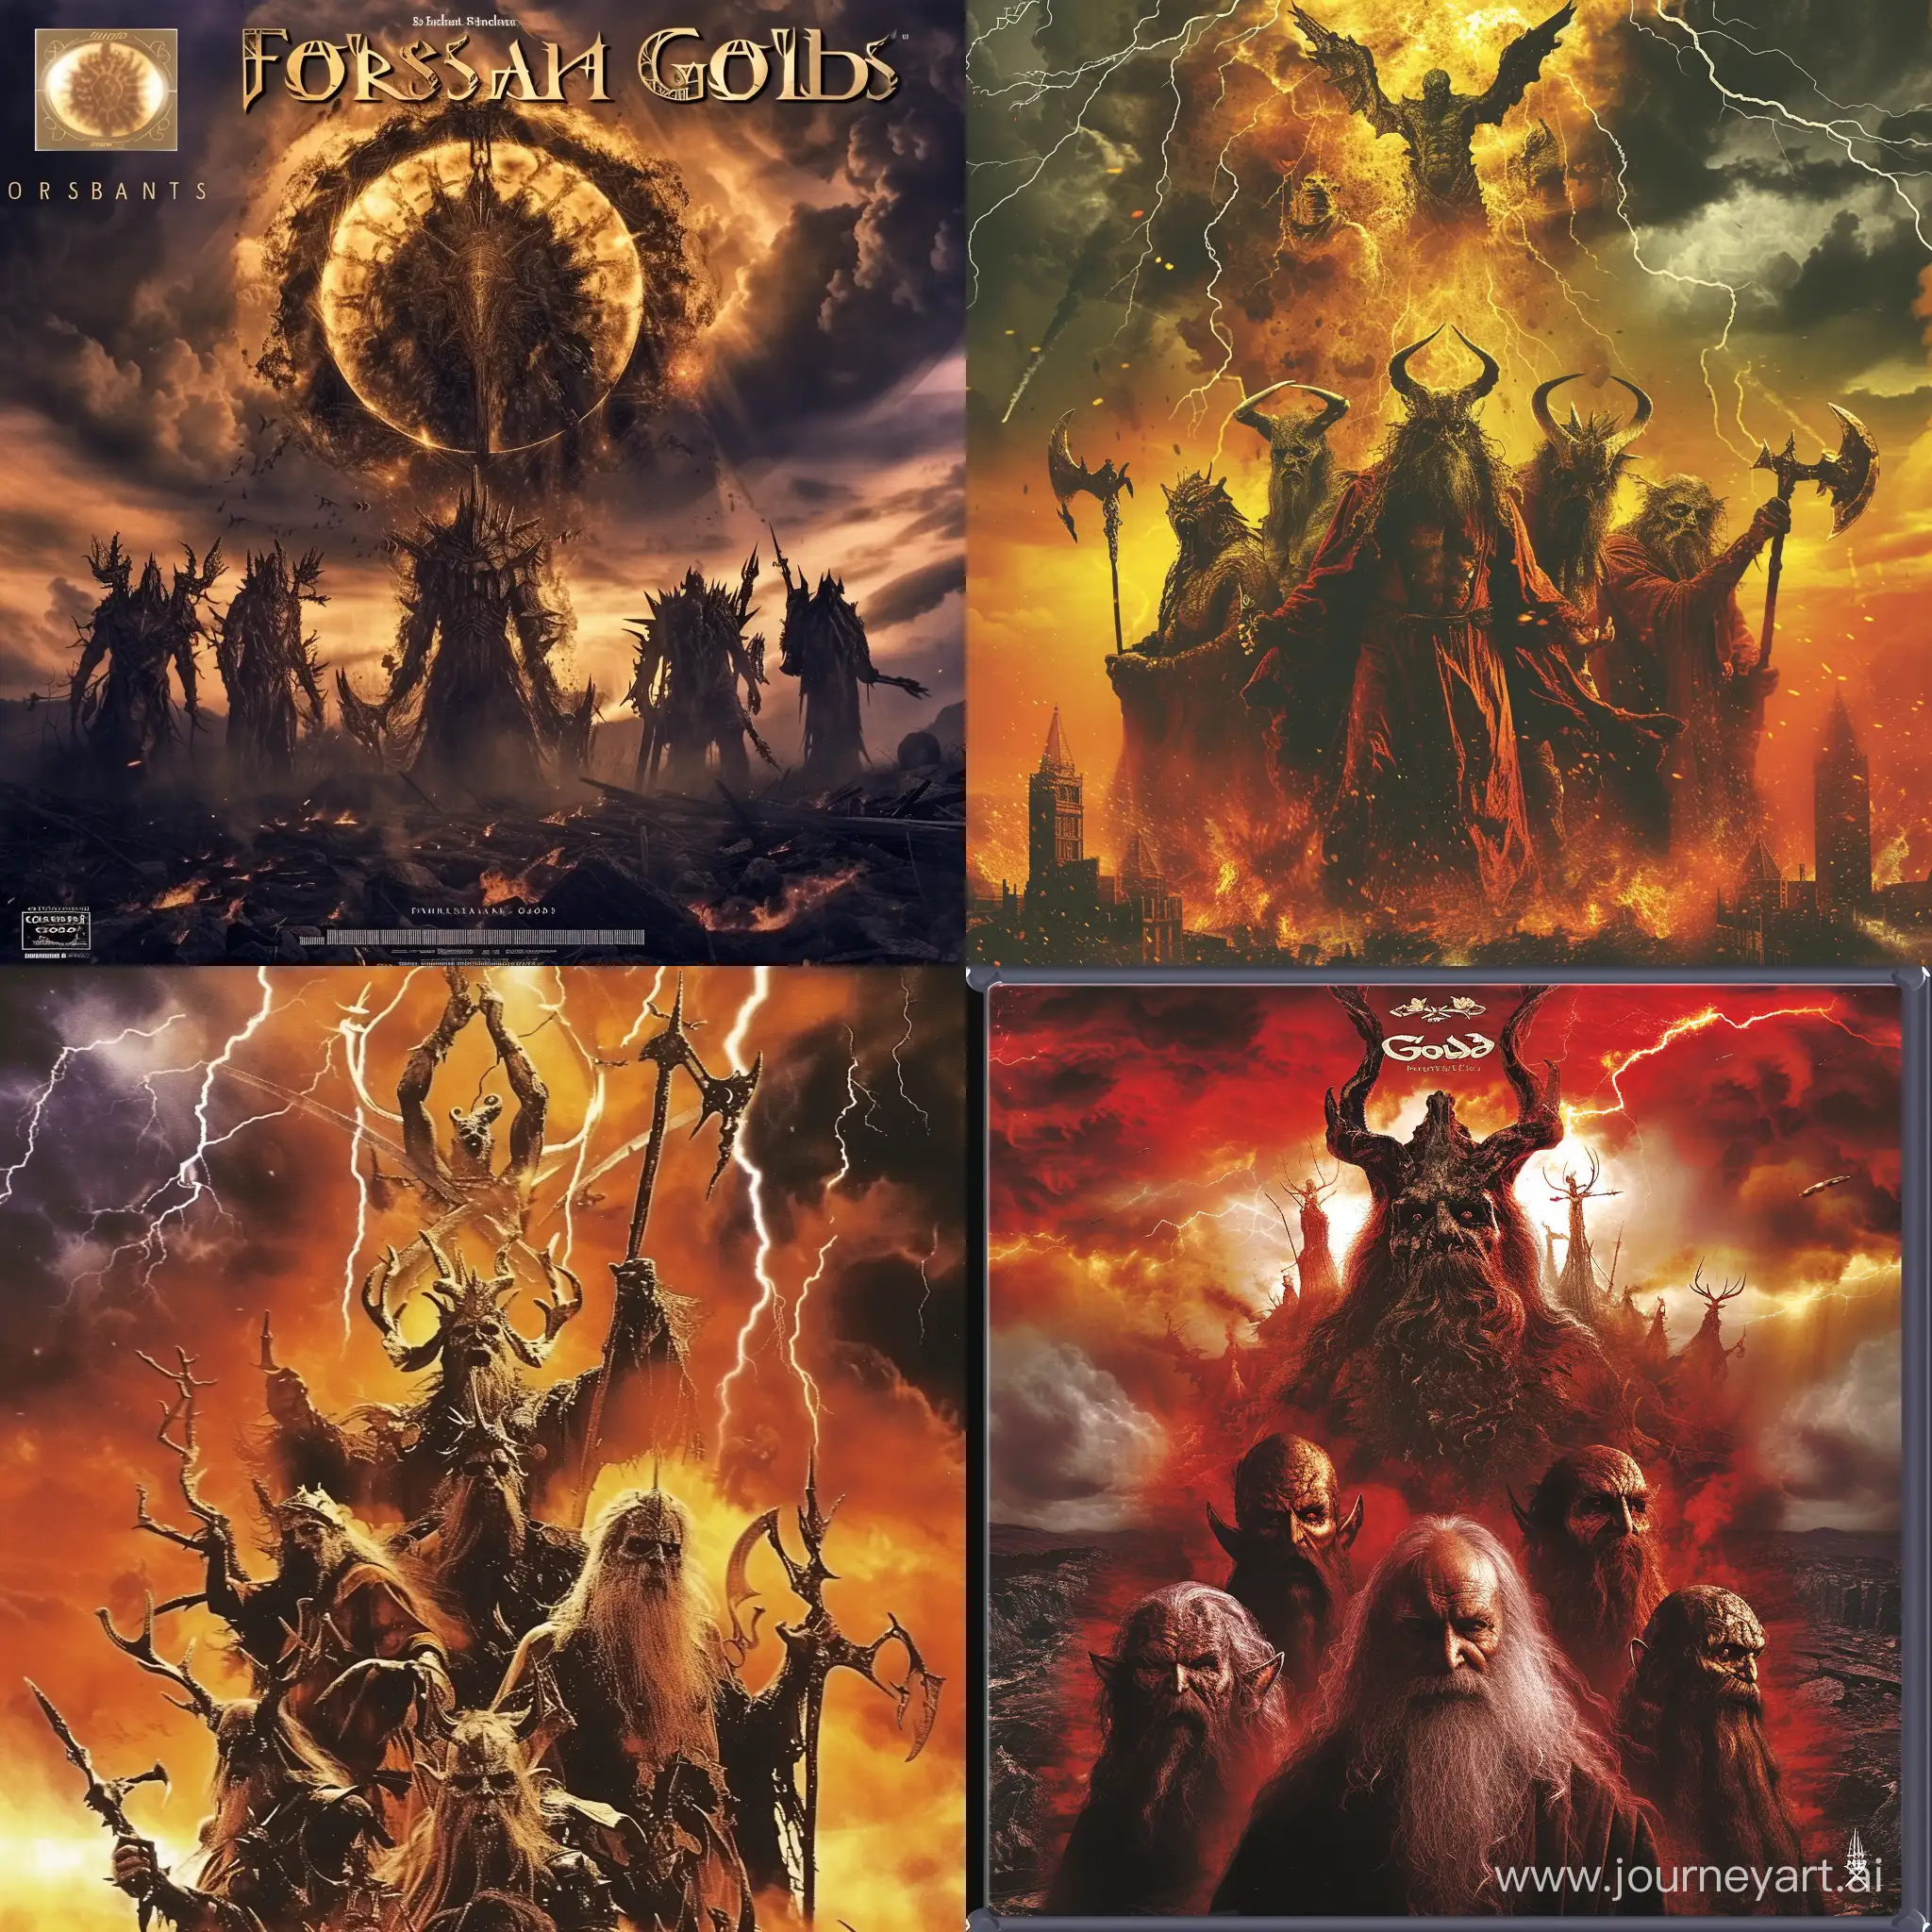 Gloomy-Pantheon-Forsaken-Gods-Dark-Fantasy-DVD-Cover